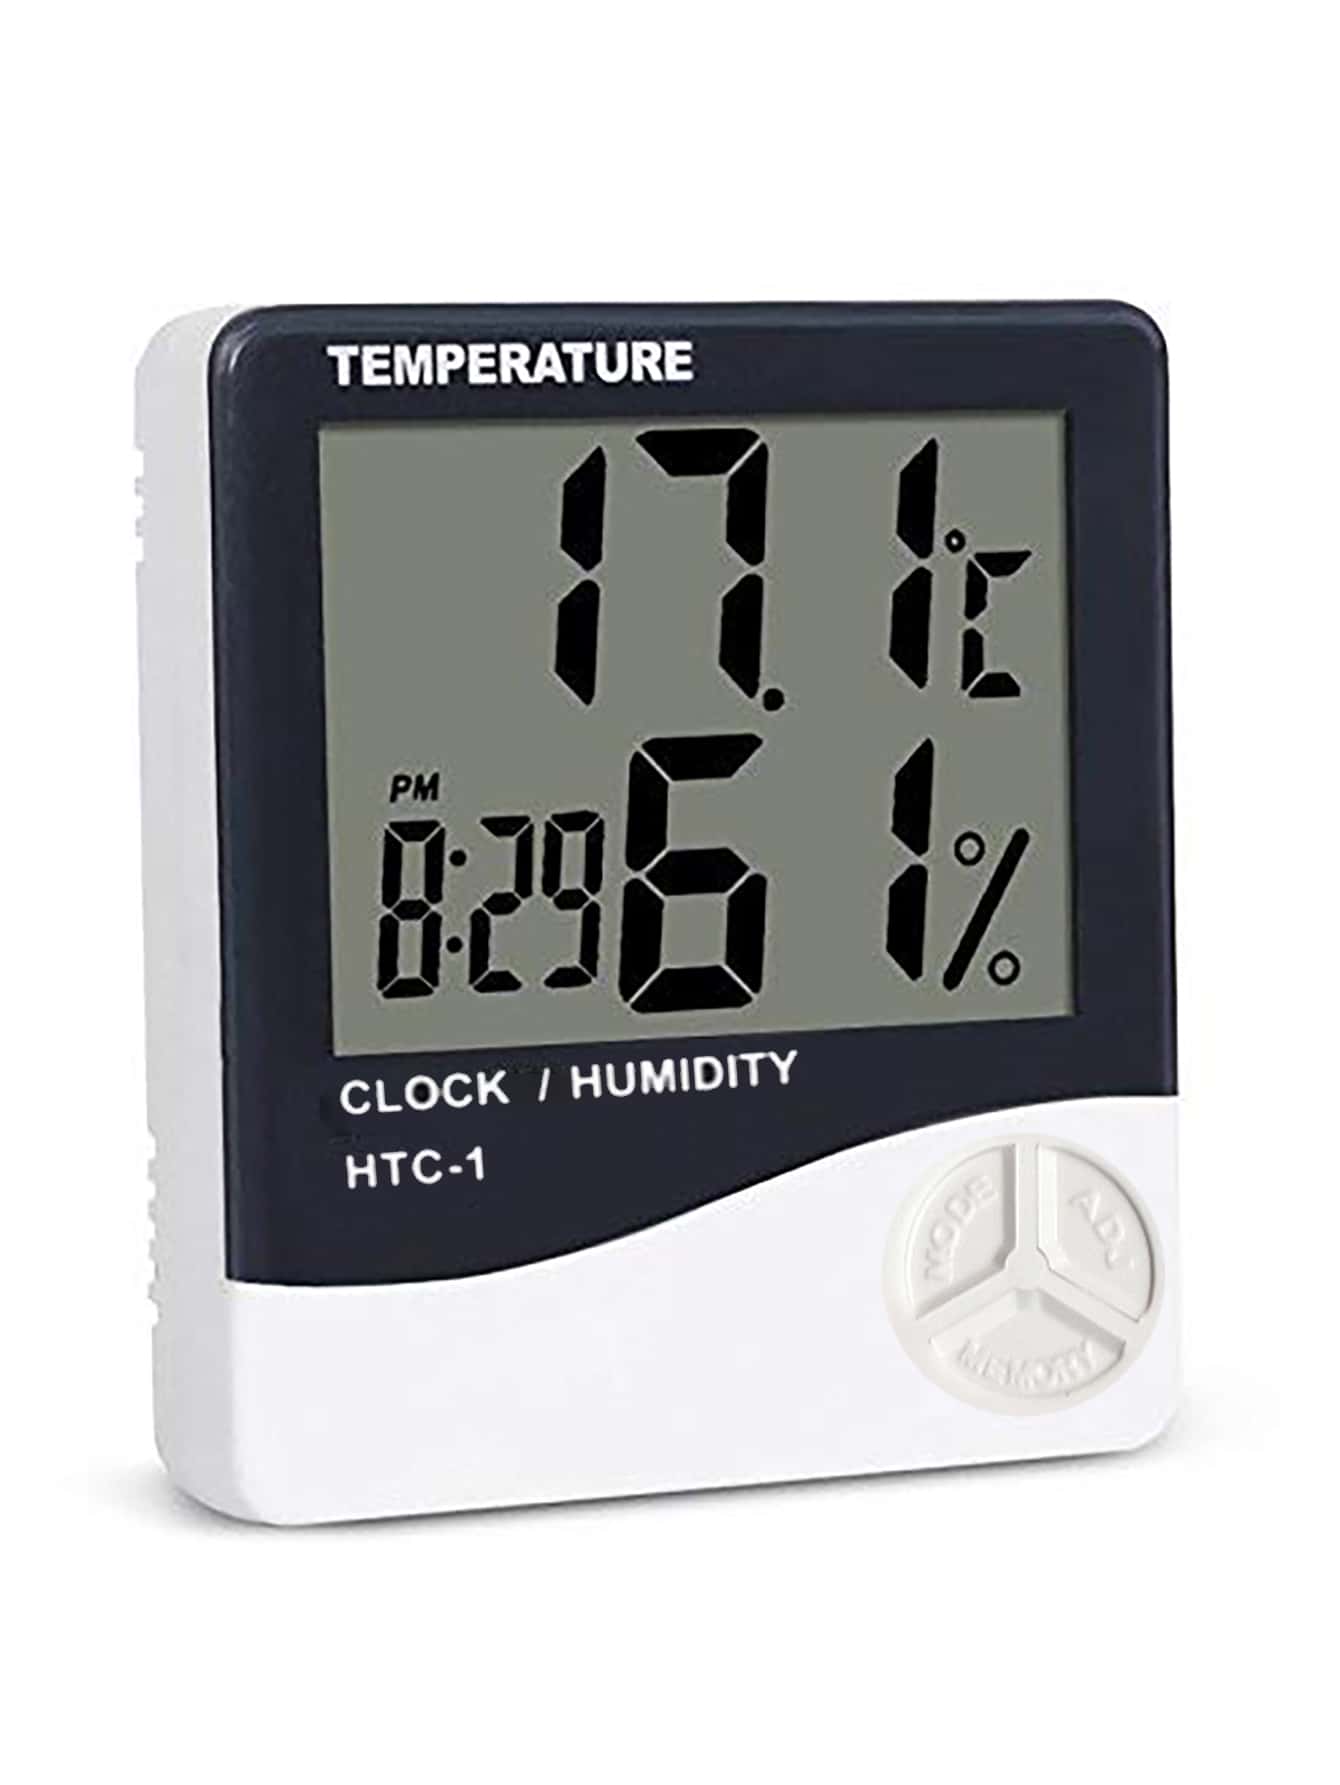 Многофункциональный электронный термометр SHEIN